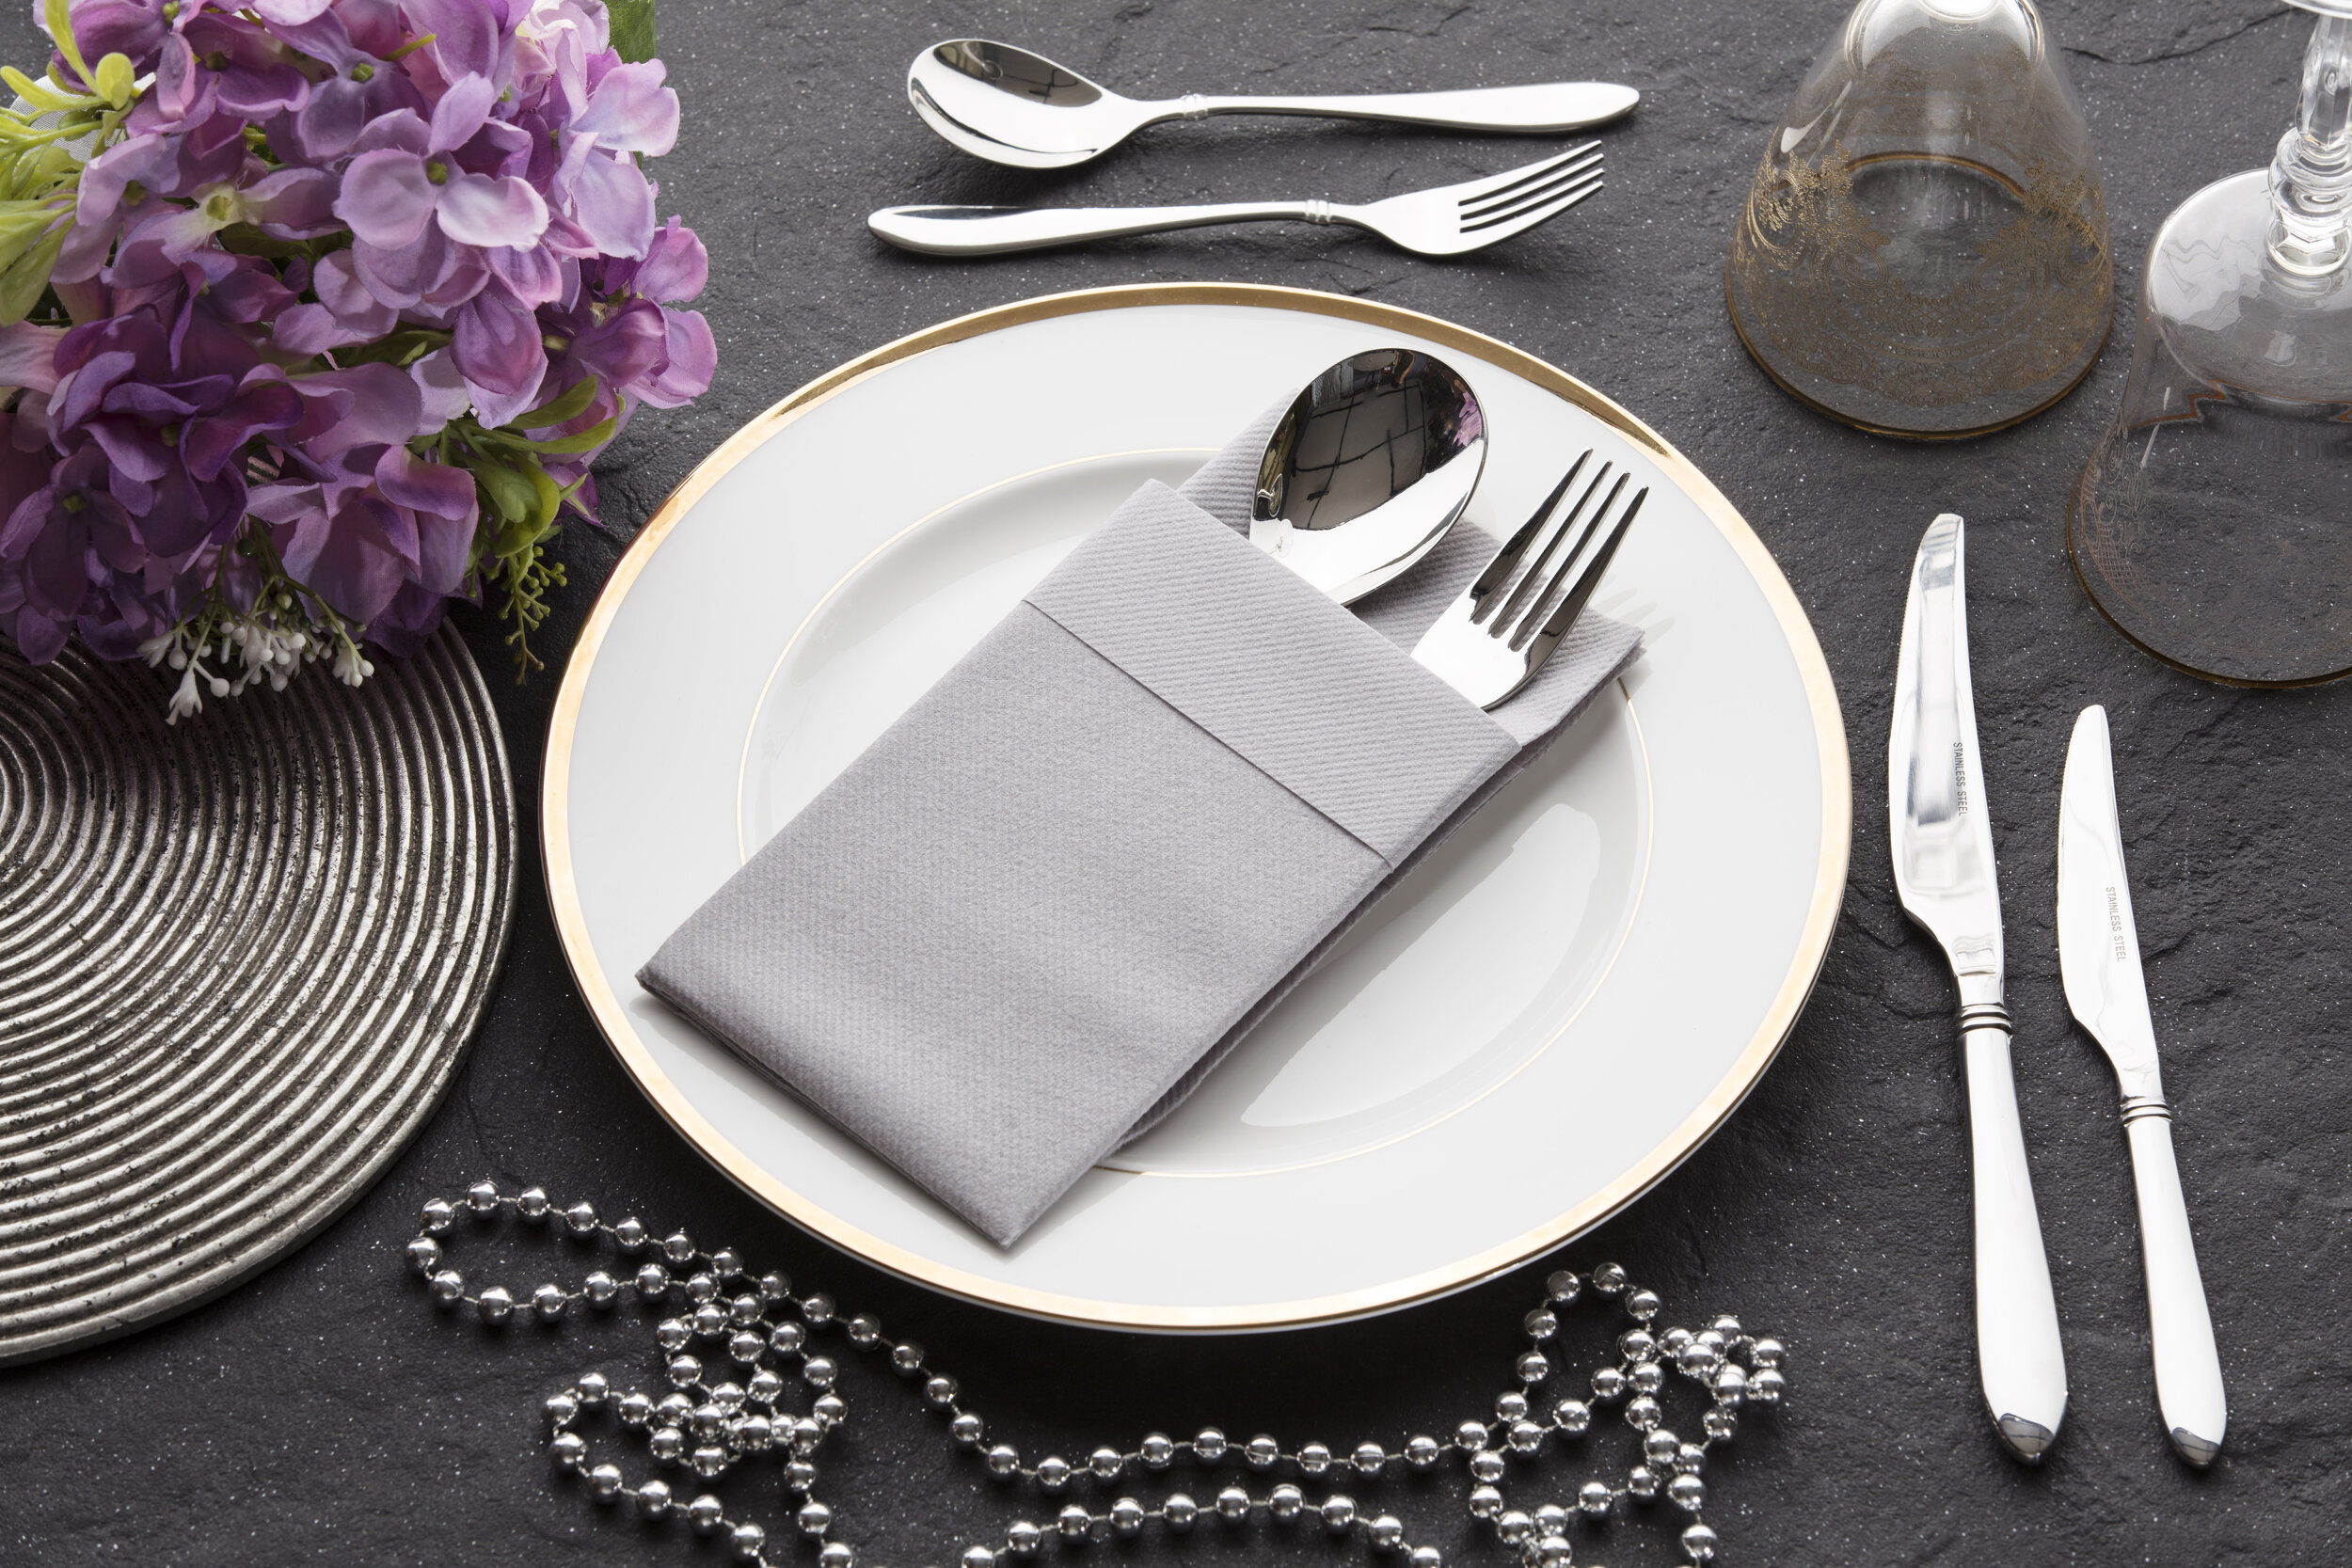 Touchstone by Choice White Linen-Feel Pocket Fold Dinner Napkin